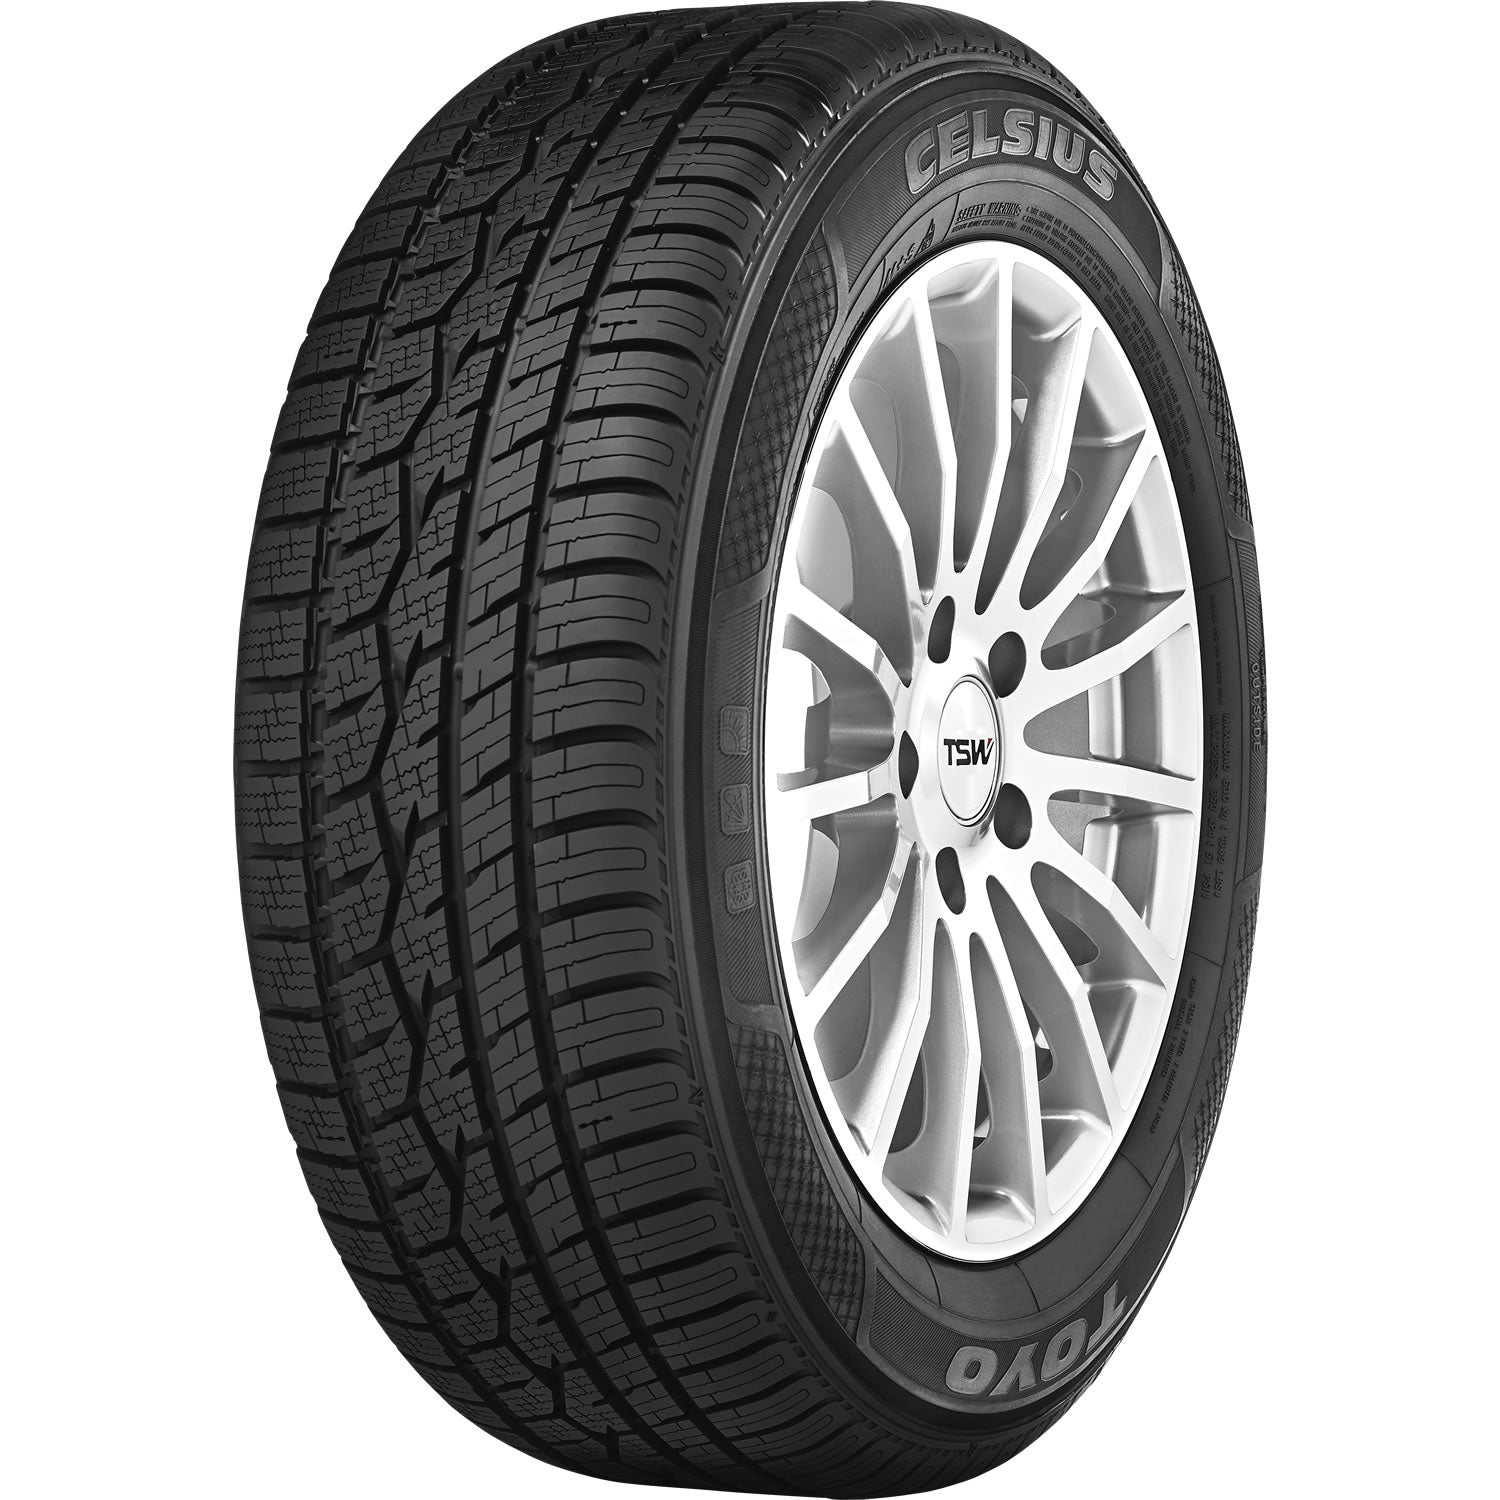 TOYO TIRES CELSIUS 205/60R16 (25.7X8.2R 16) Tires